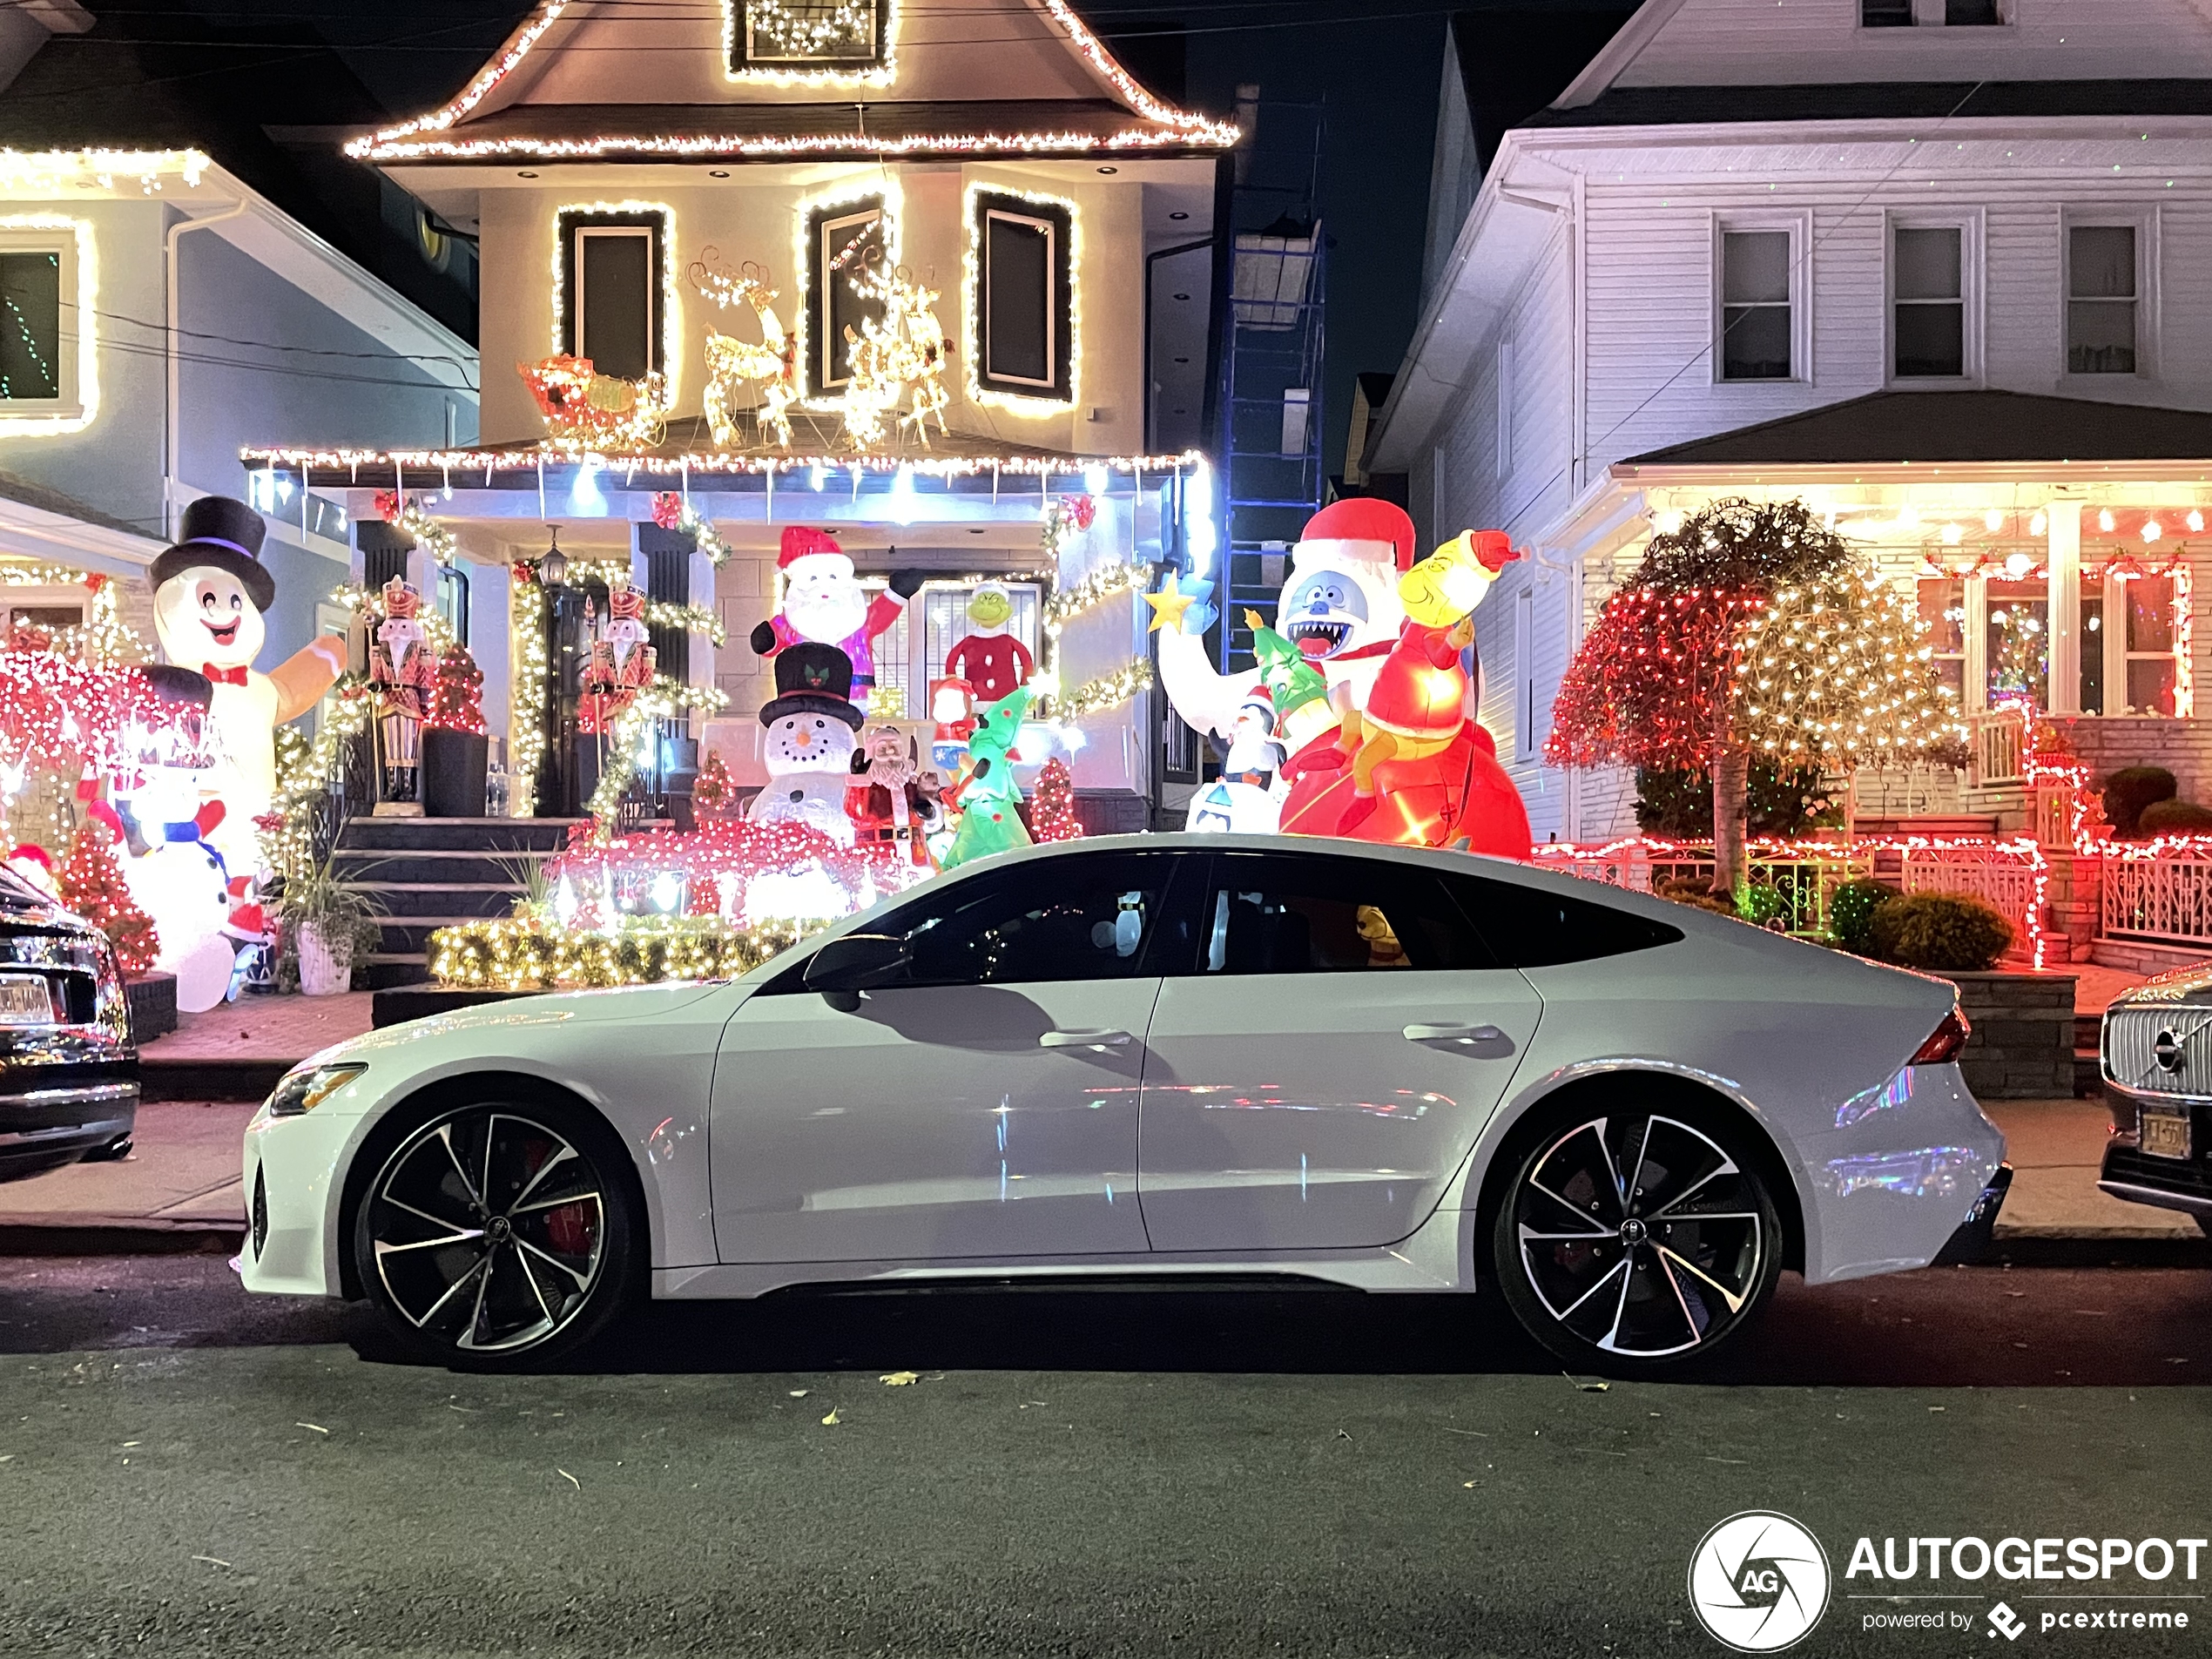 Kom in de kerststemming met deze Audi RS7 spot